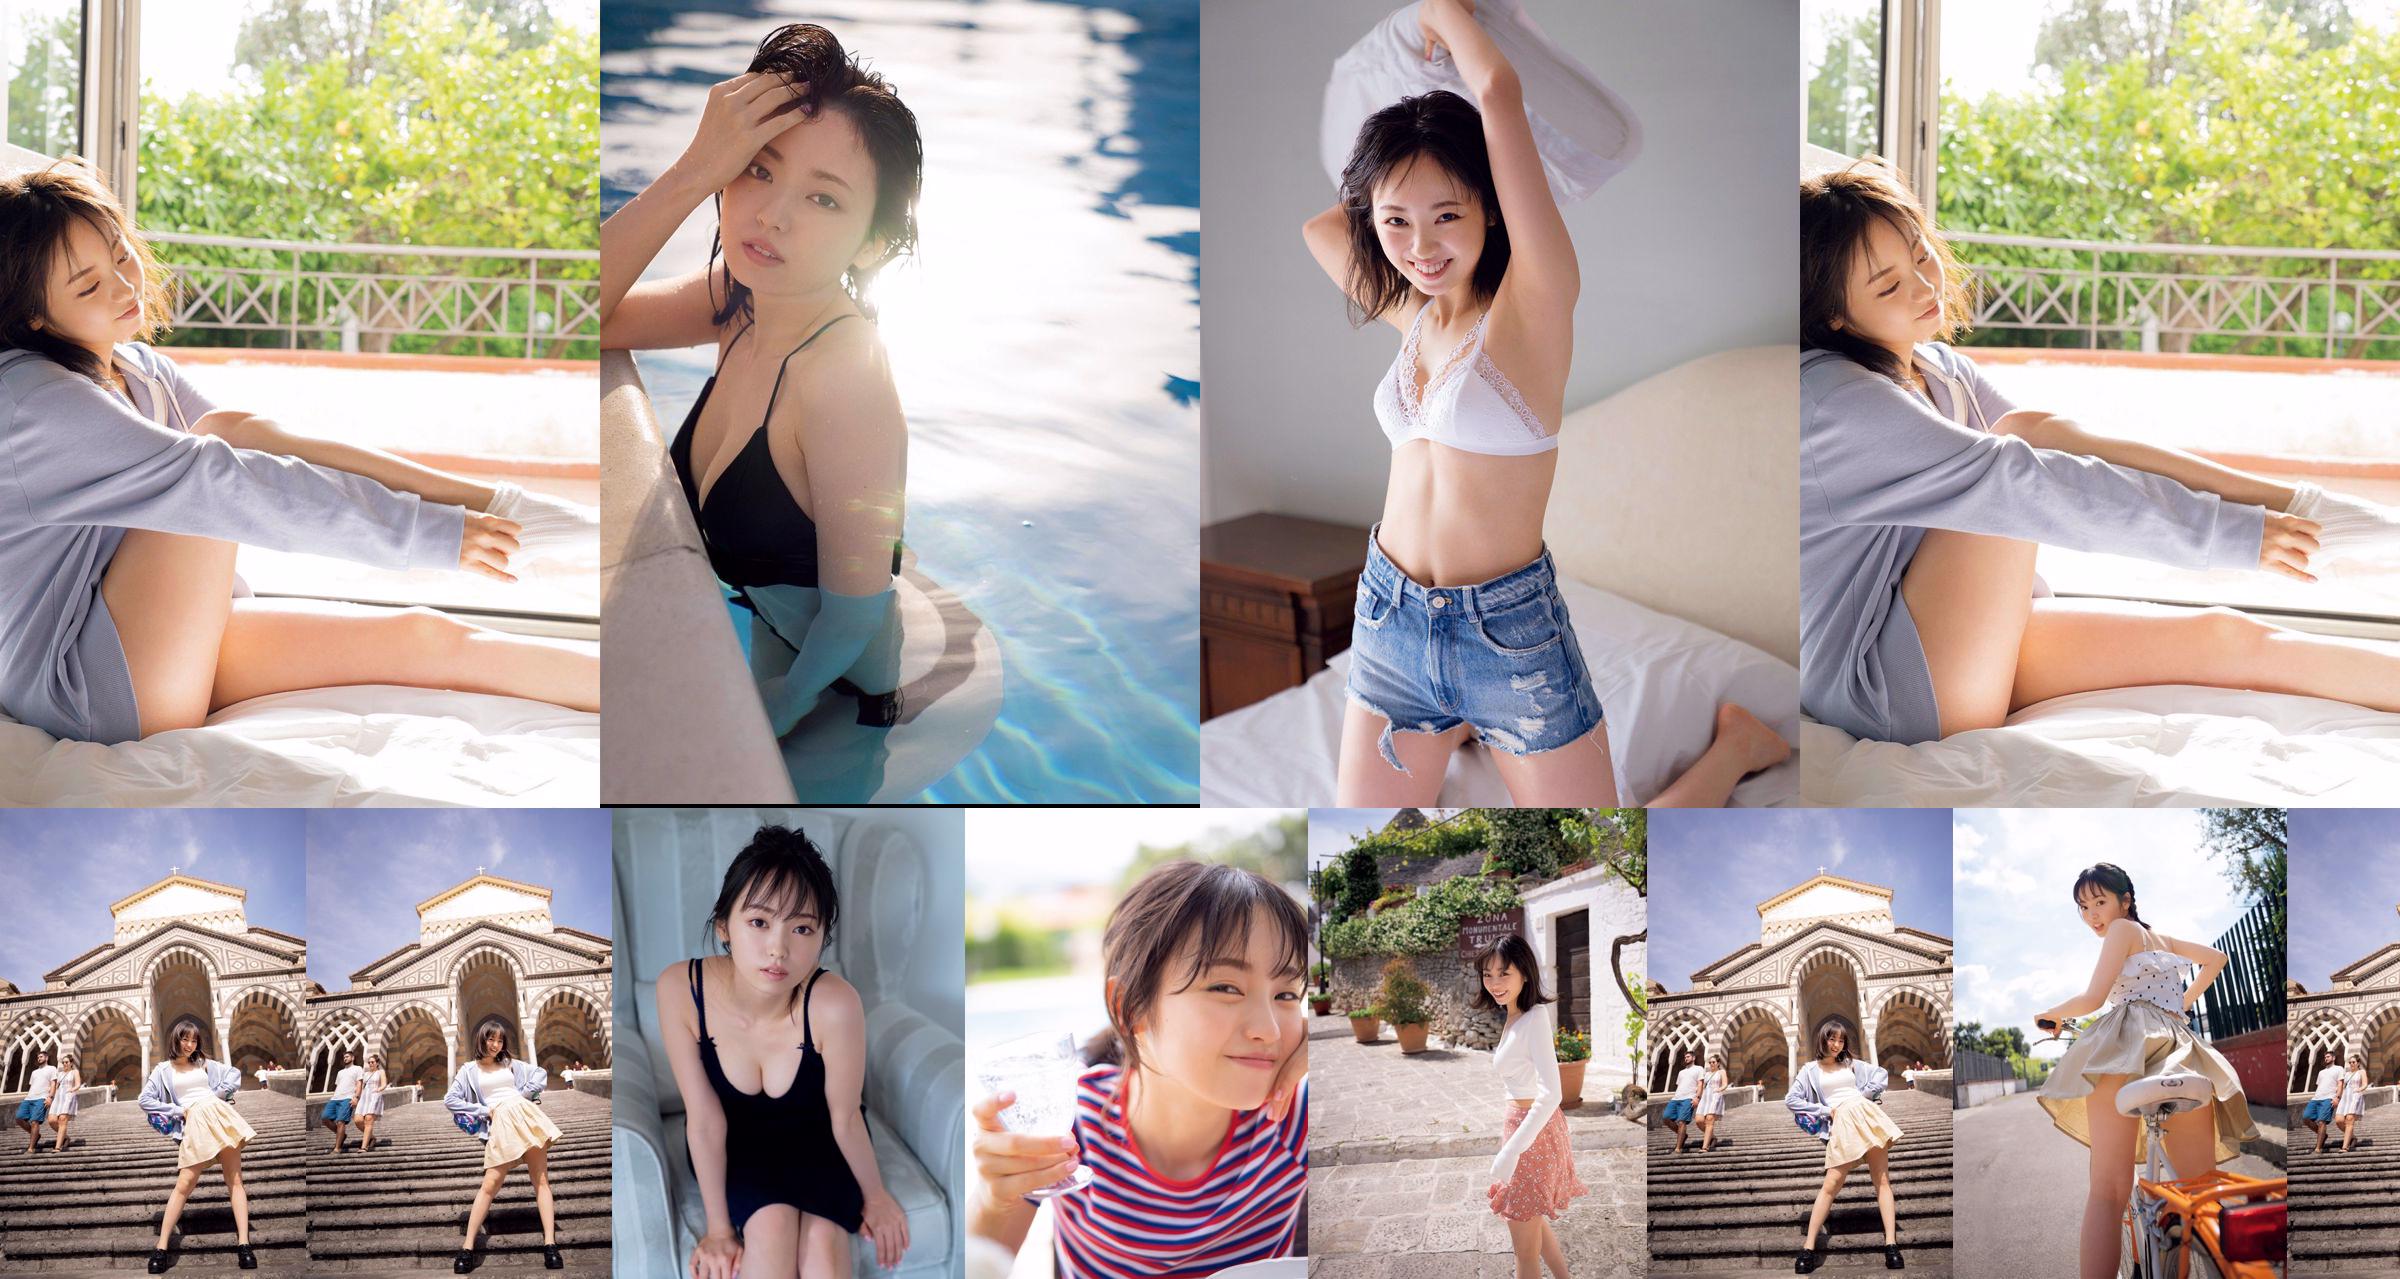 [VIERNES] Keyakizaka46, Yui Imaizumi "Traje de baño y lencería de" ¡Primero y último! "" Foto No.8f1f13 Página 1